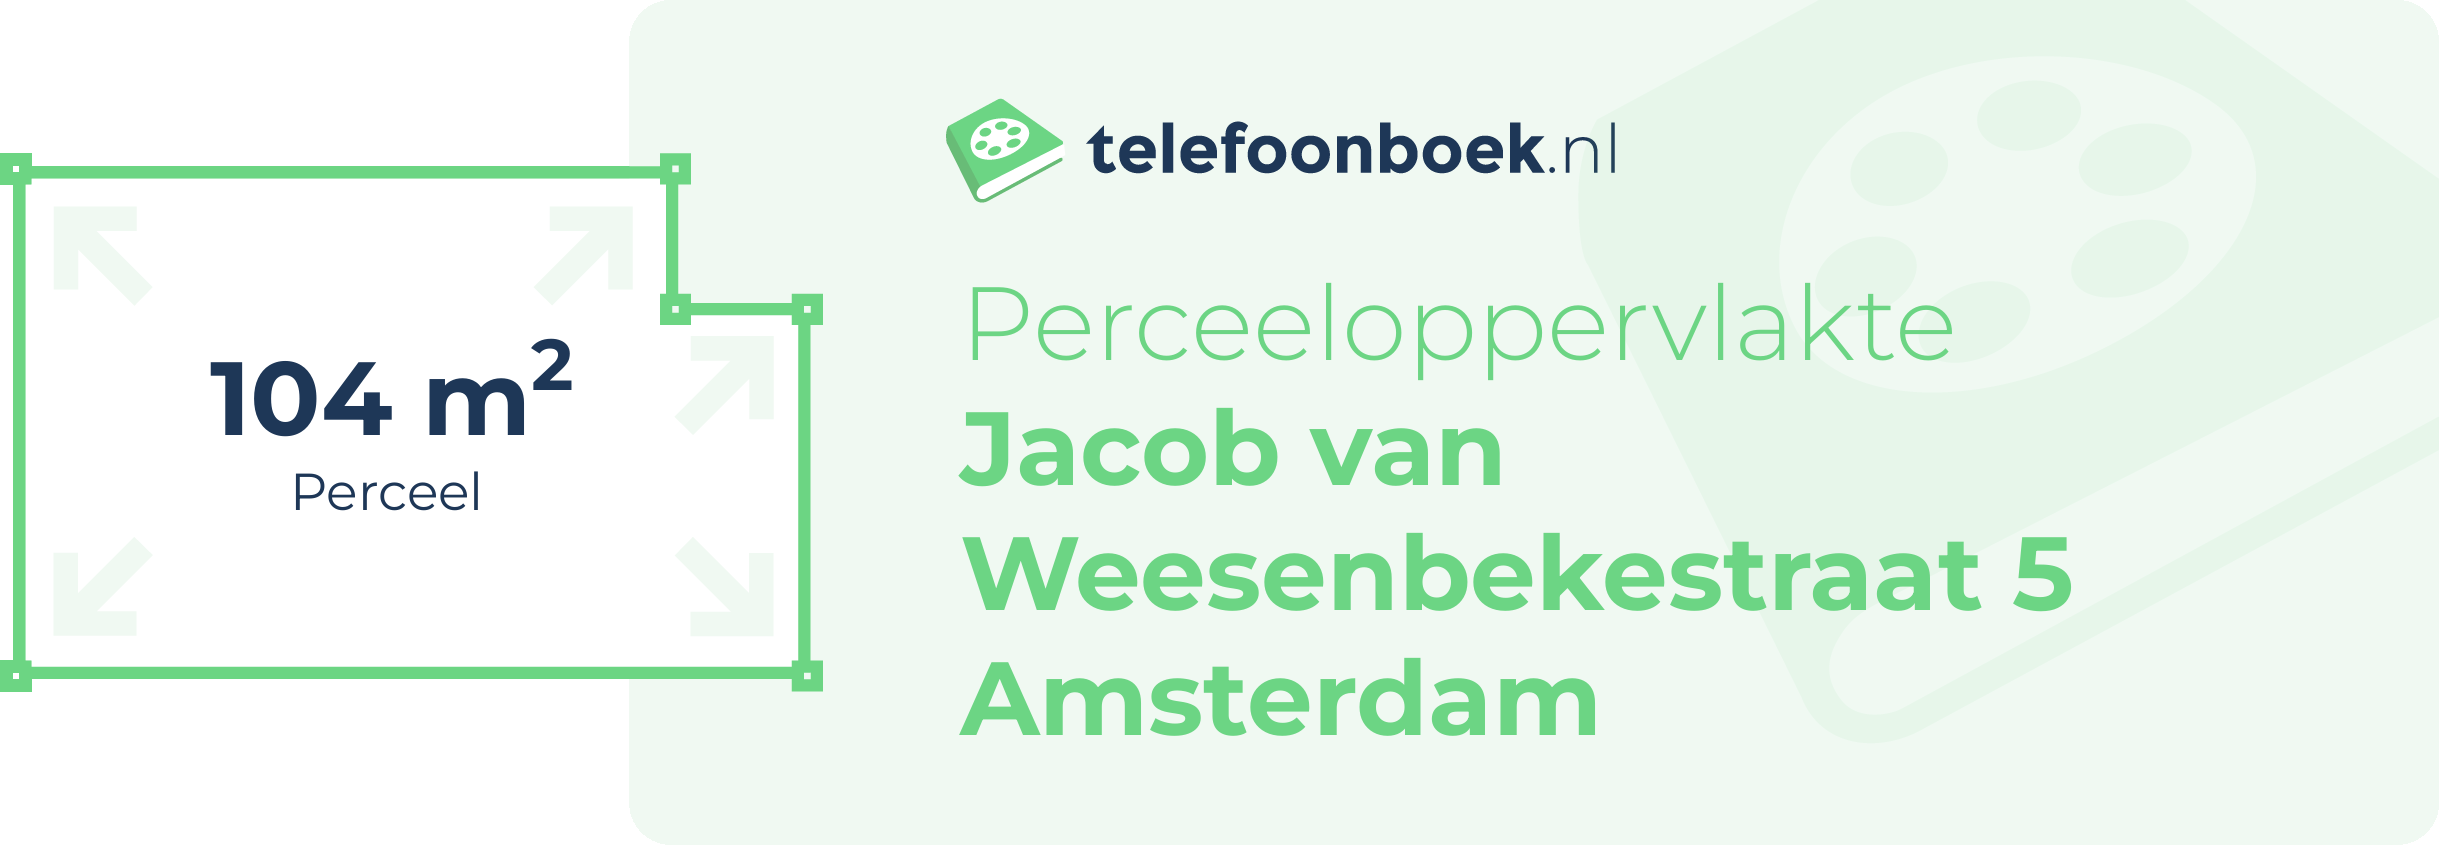 Perceeloppervlakte Jacob Van Weesenbekestraat 5 Amsterdam